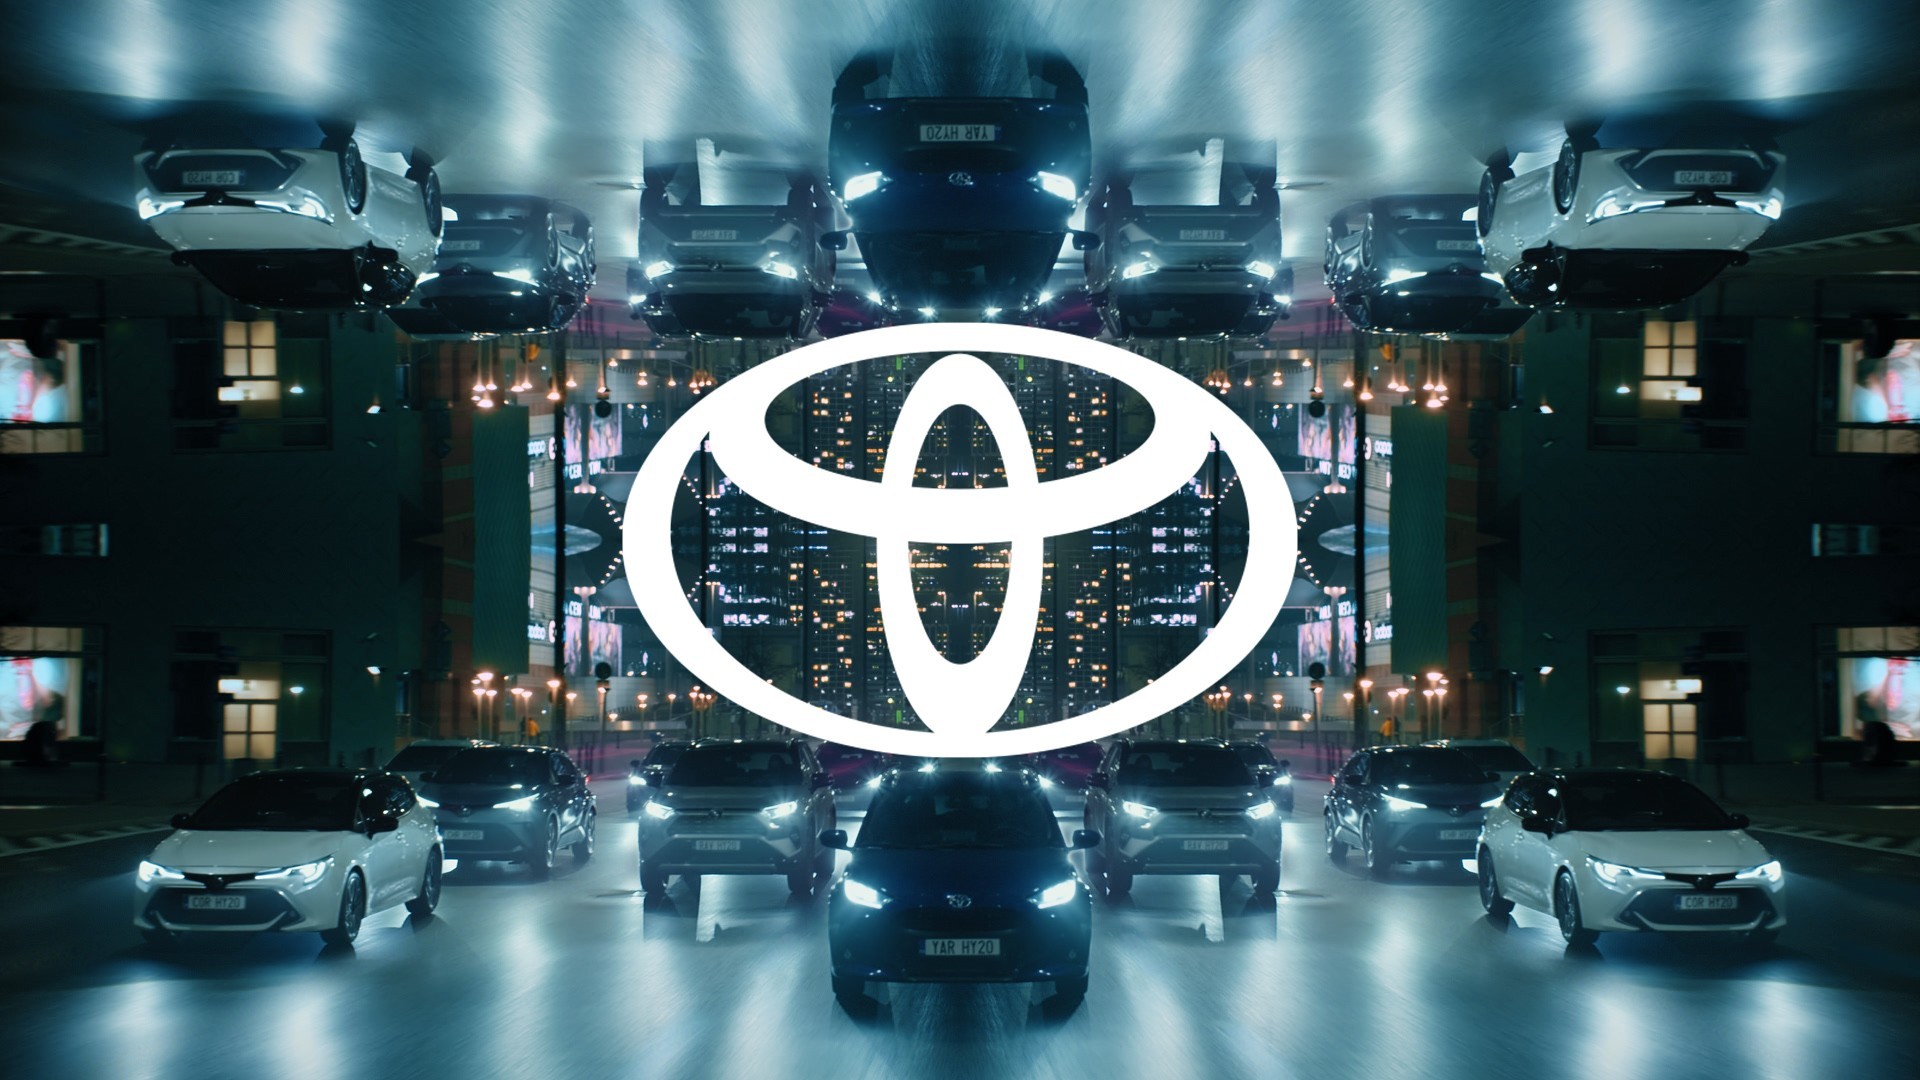 Toyota представила обновленный логотип